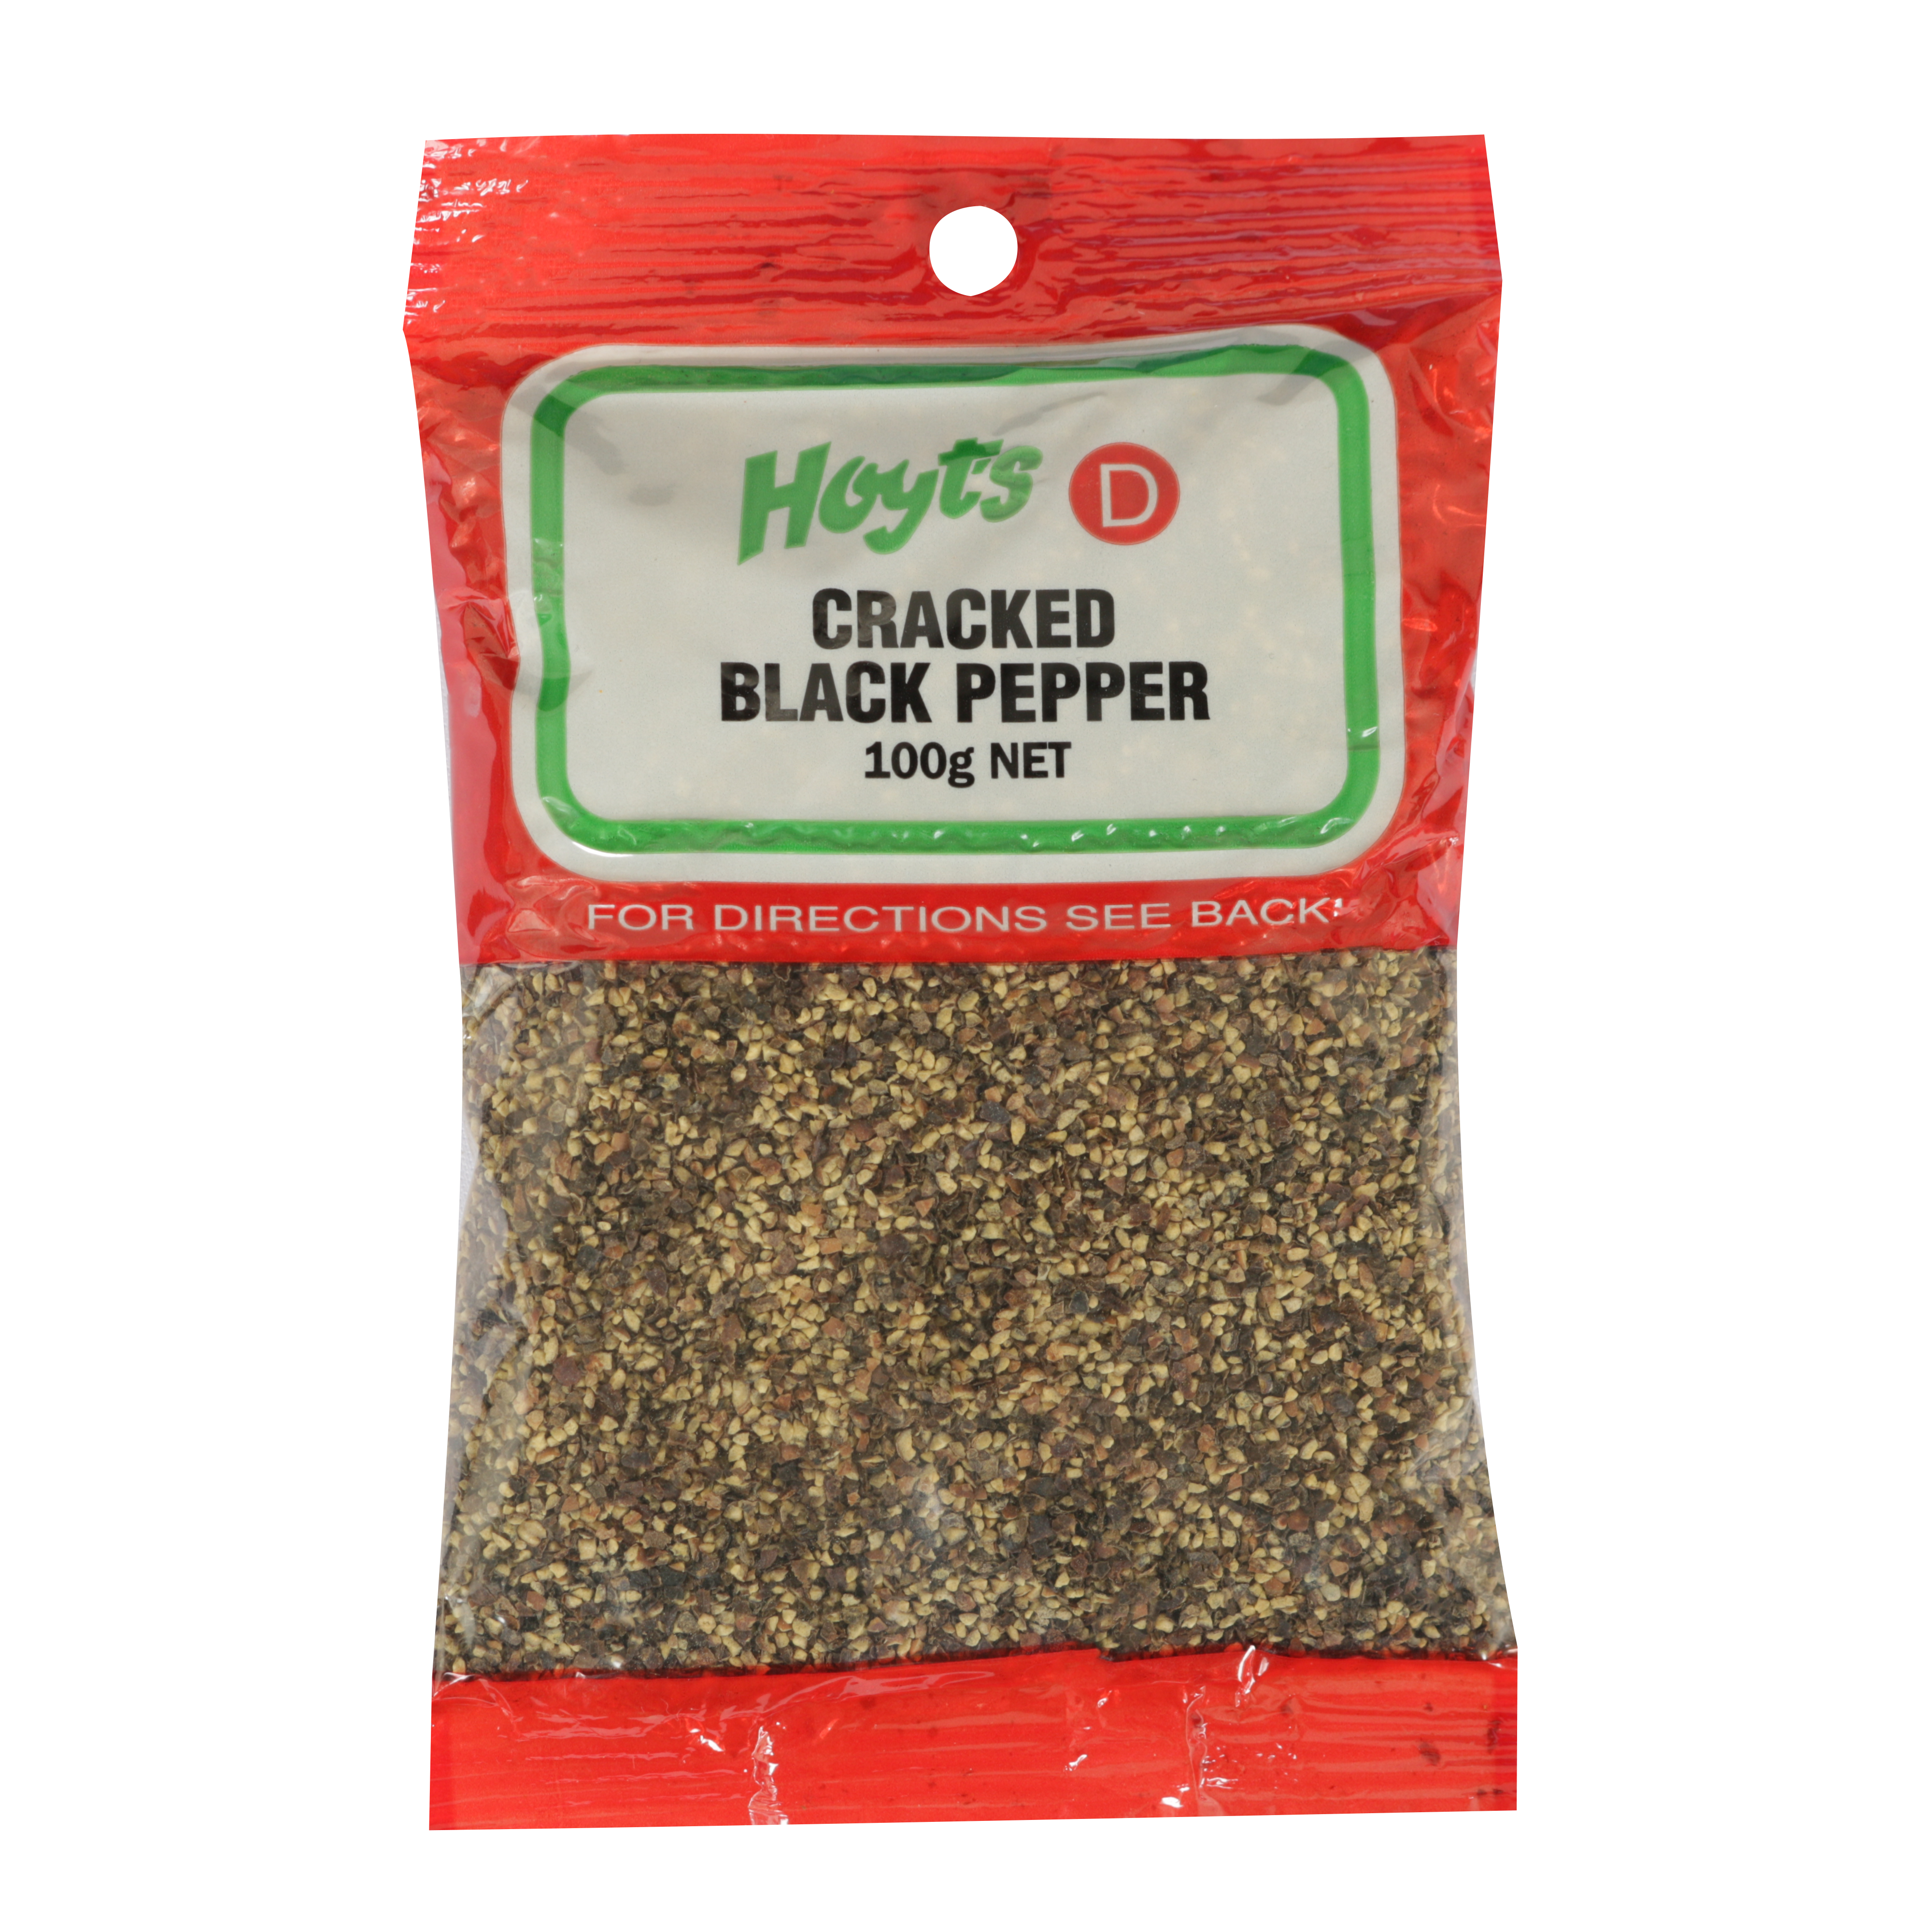 Hoyts Black Cracked Pepper 100g